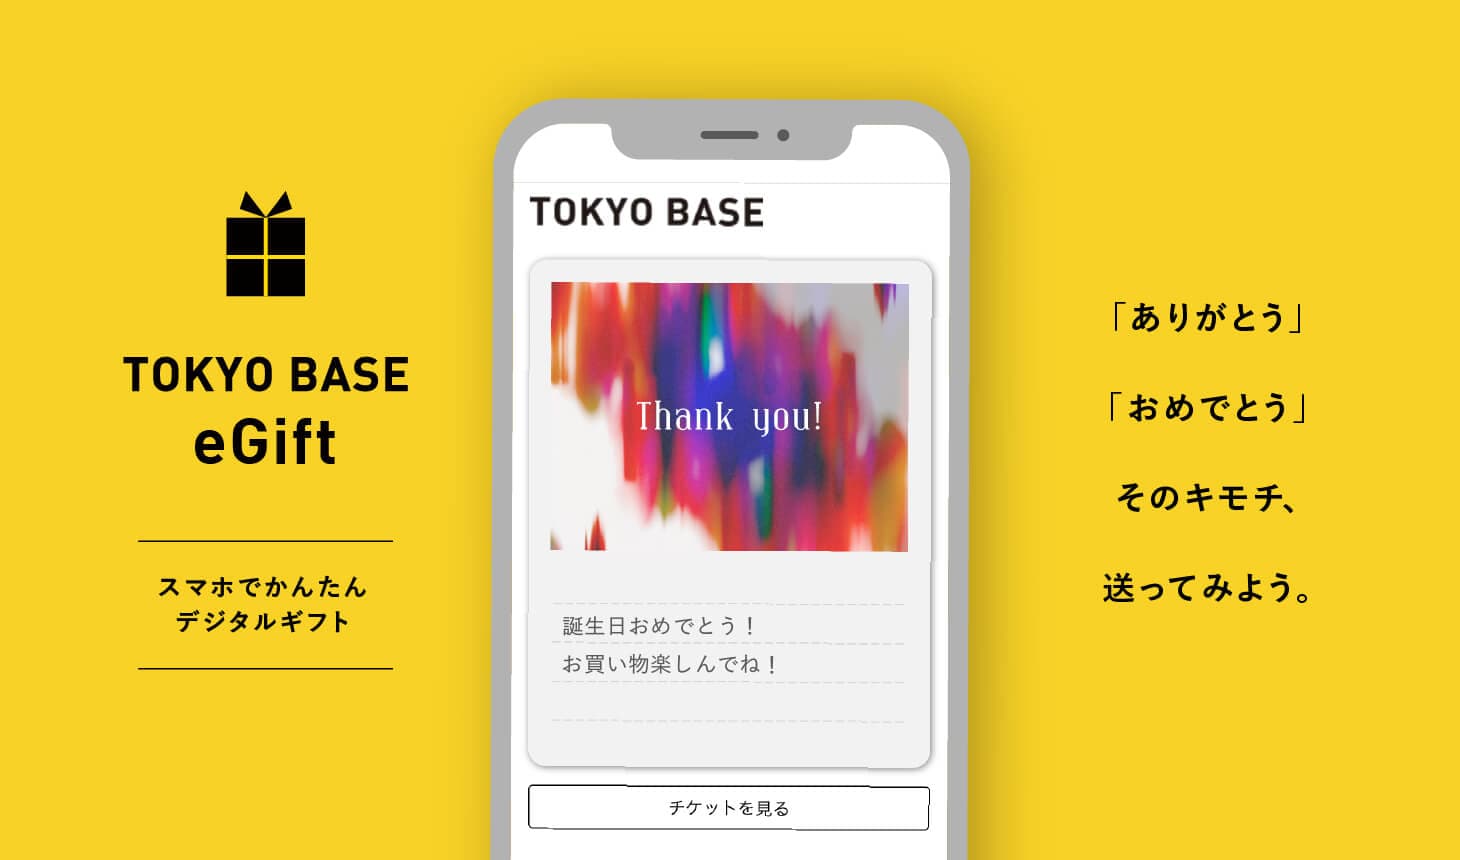 TOKYO BASE eGift